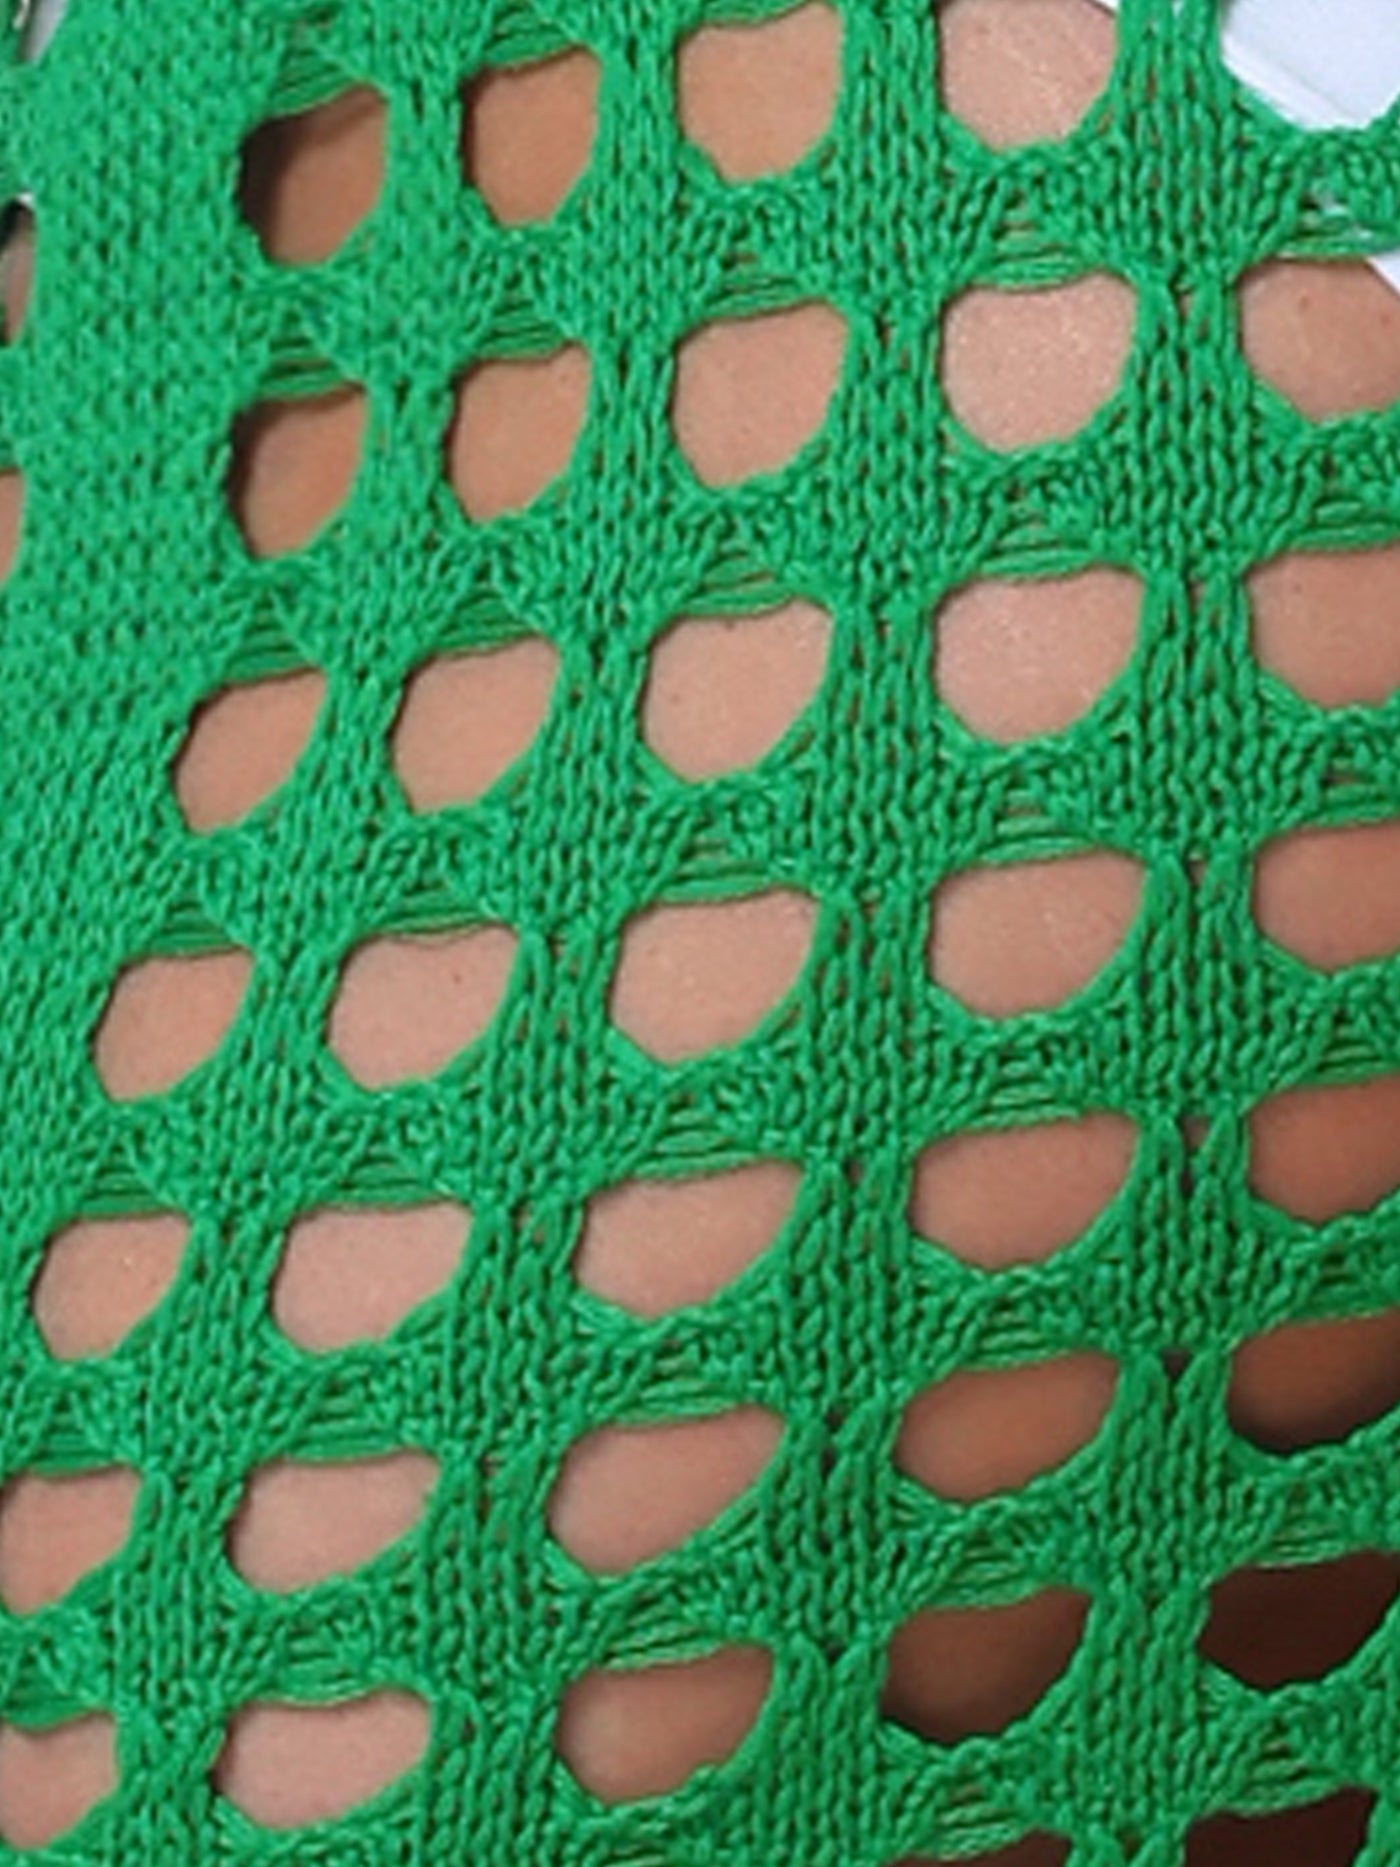 Allegra K Crochet Tassel Mesh Cover Up Drawstring Beach Mini Skirt